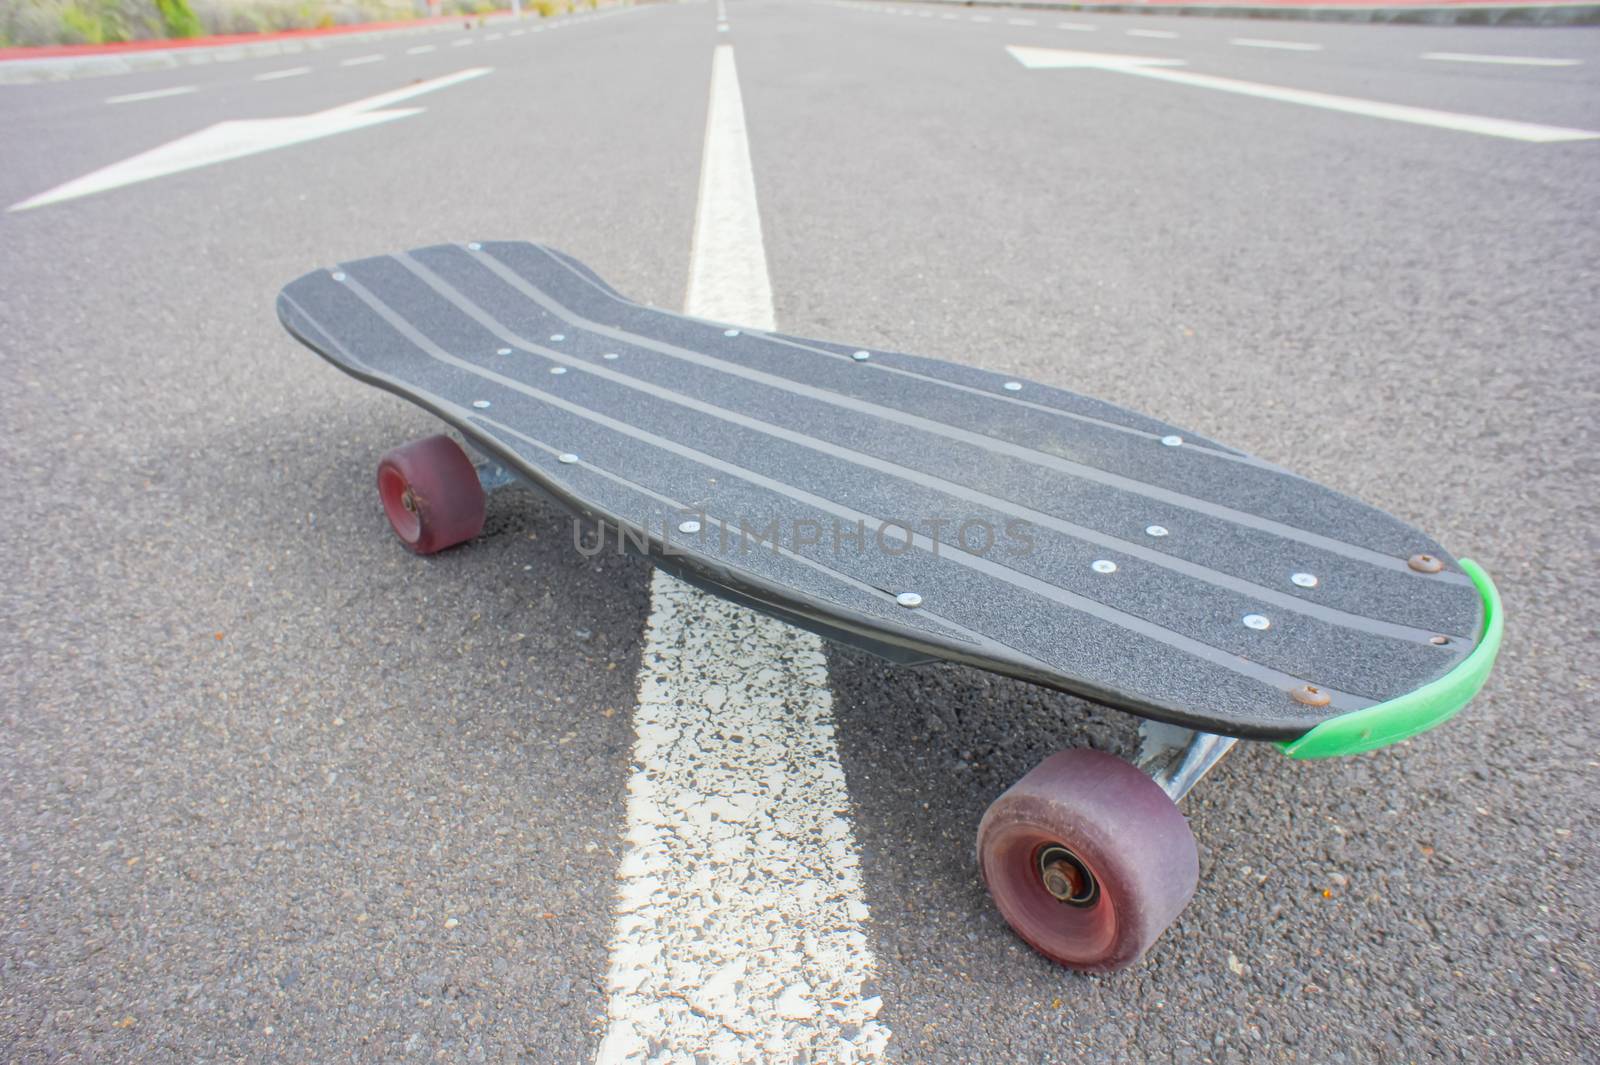 Vintage Style Longboard Black Skateboard by underworld